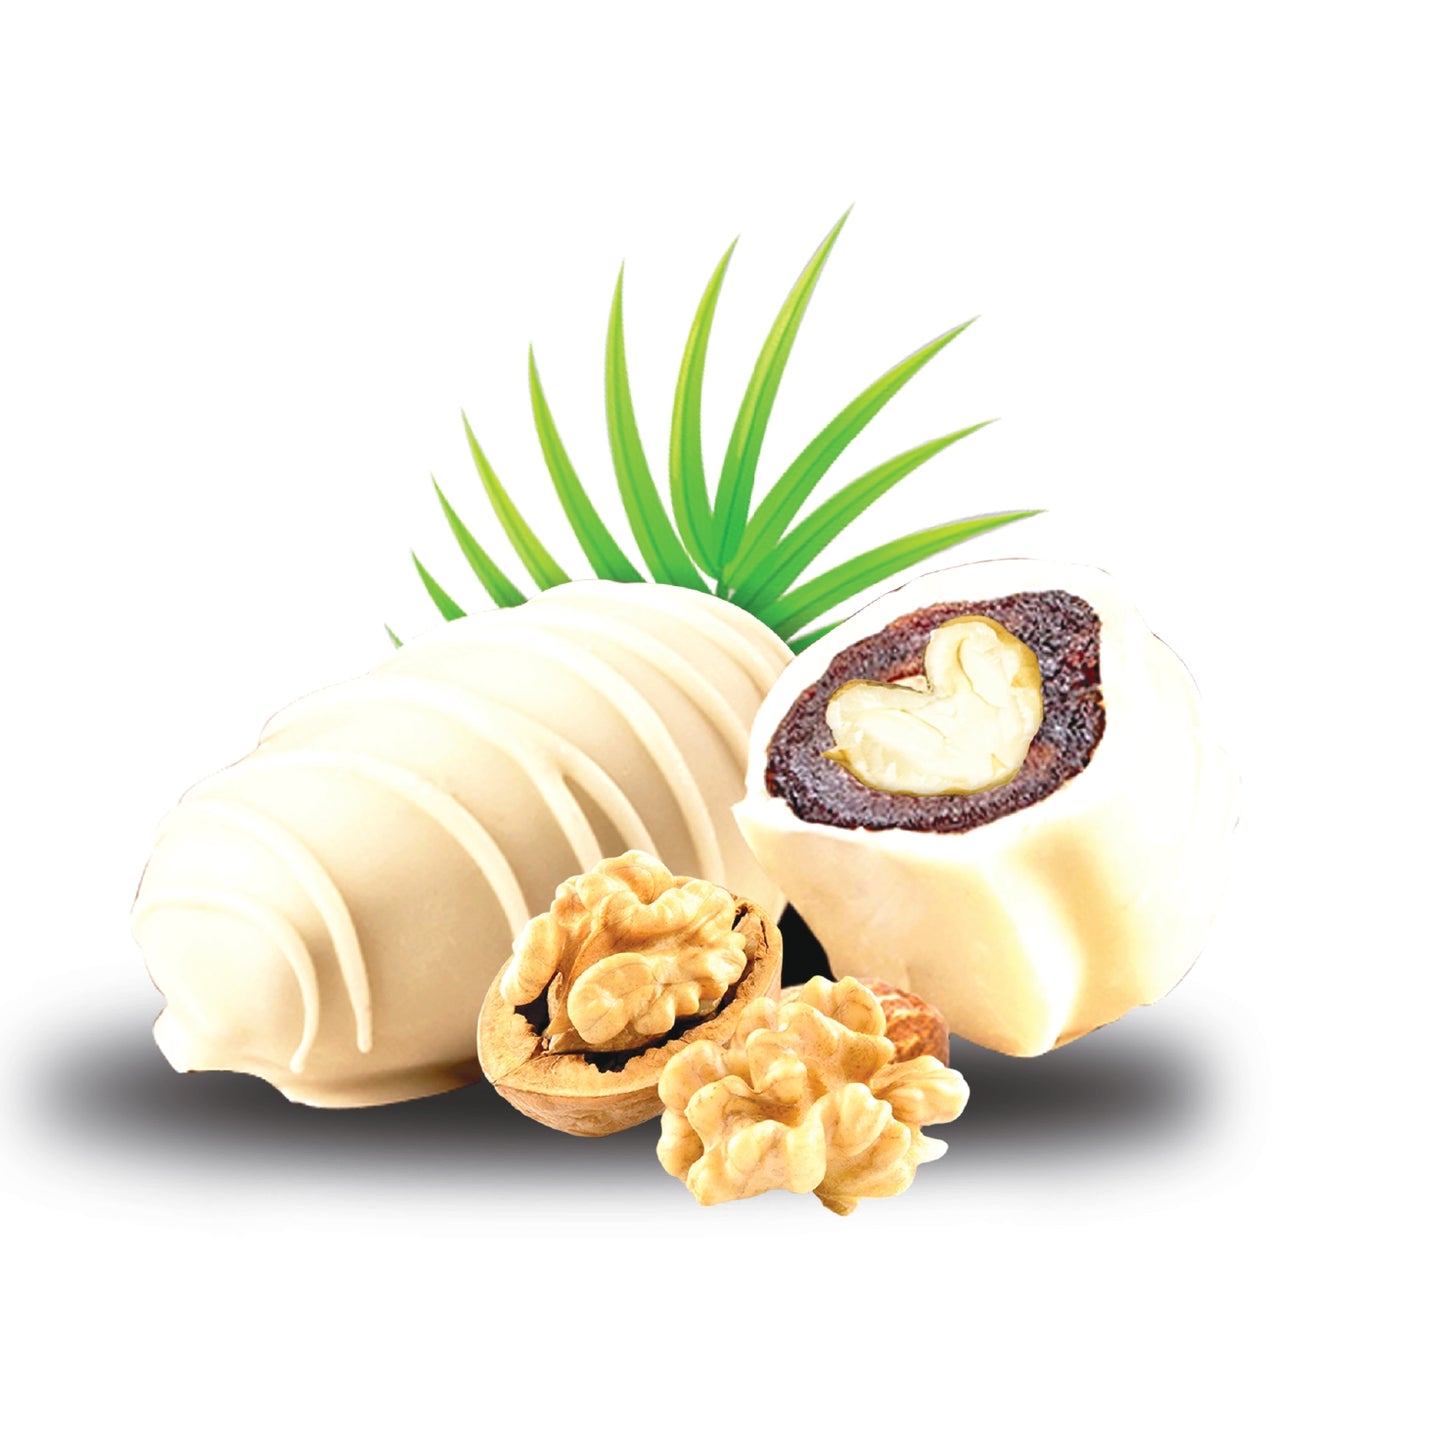 Milk Chocolate walnut Dates 1 KG - kingdom Dates UAE